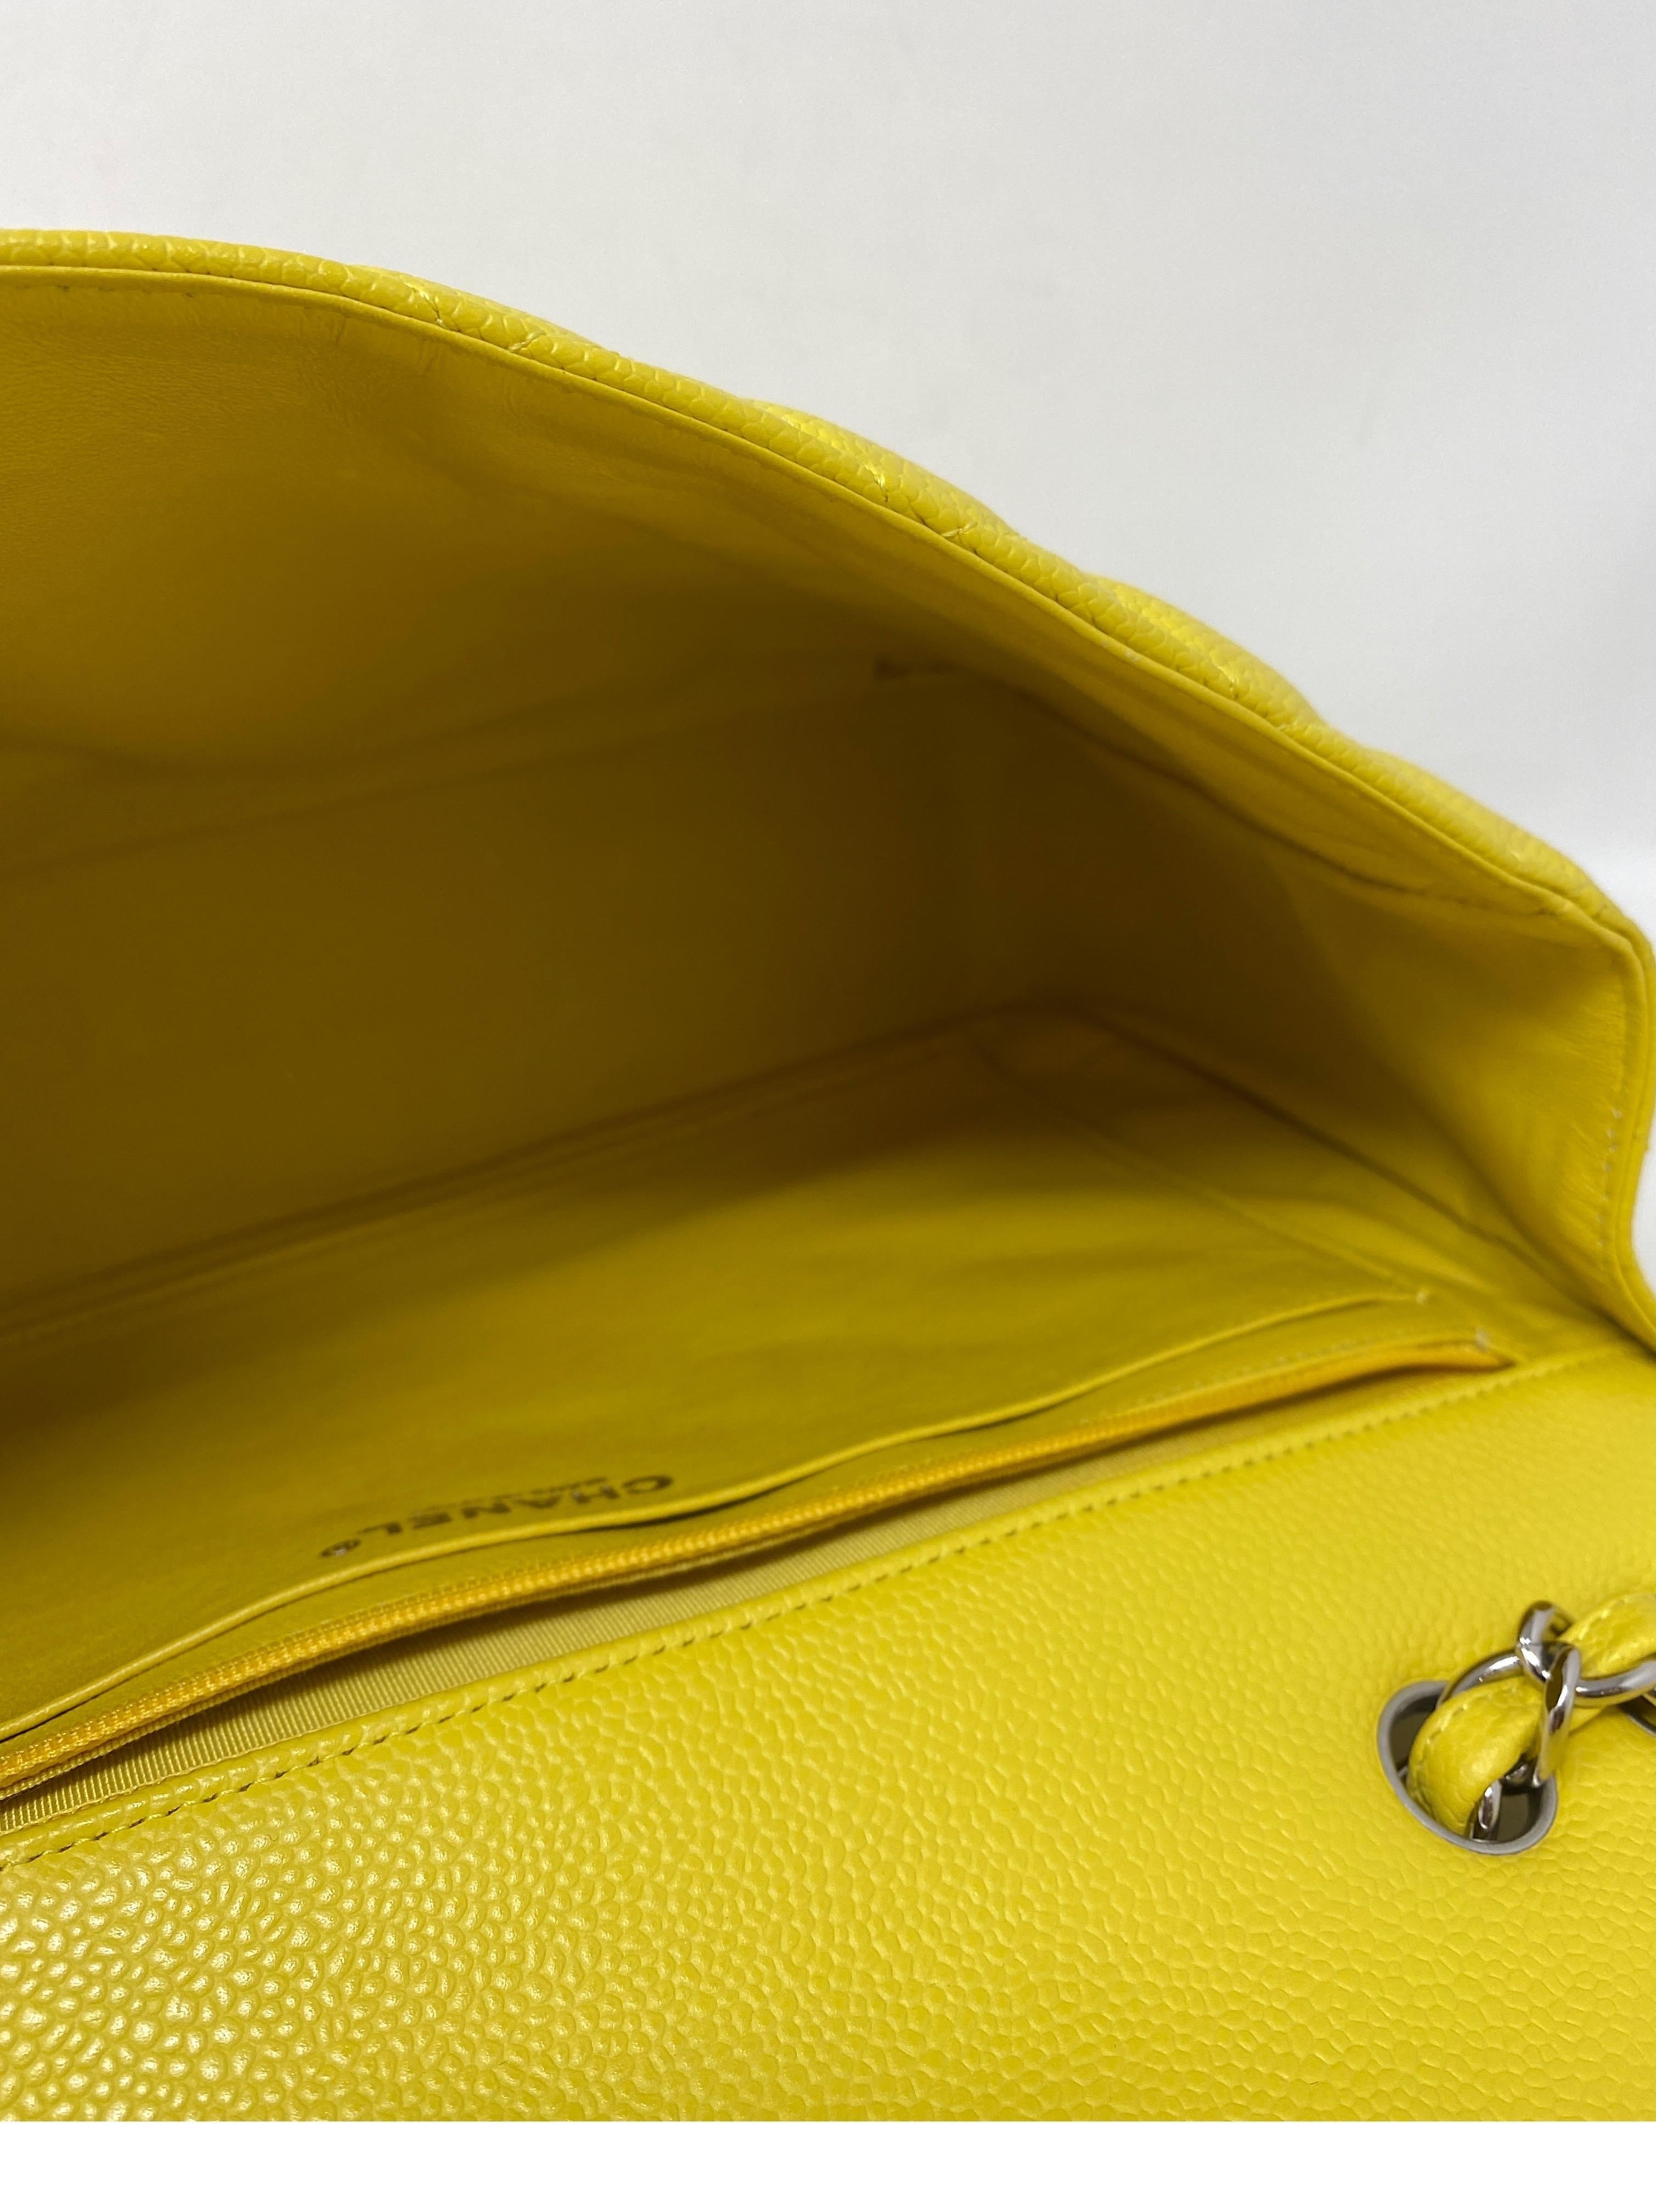 Chanel Jumbo Yellow Bag  9